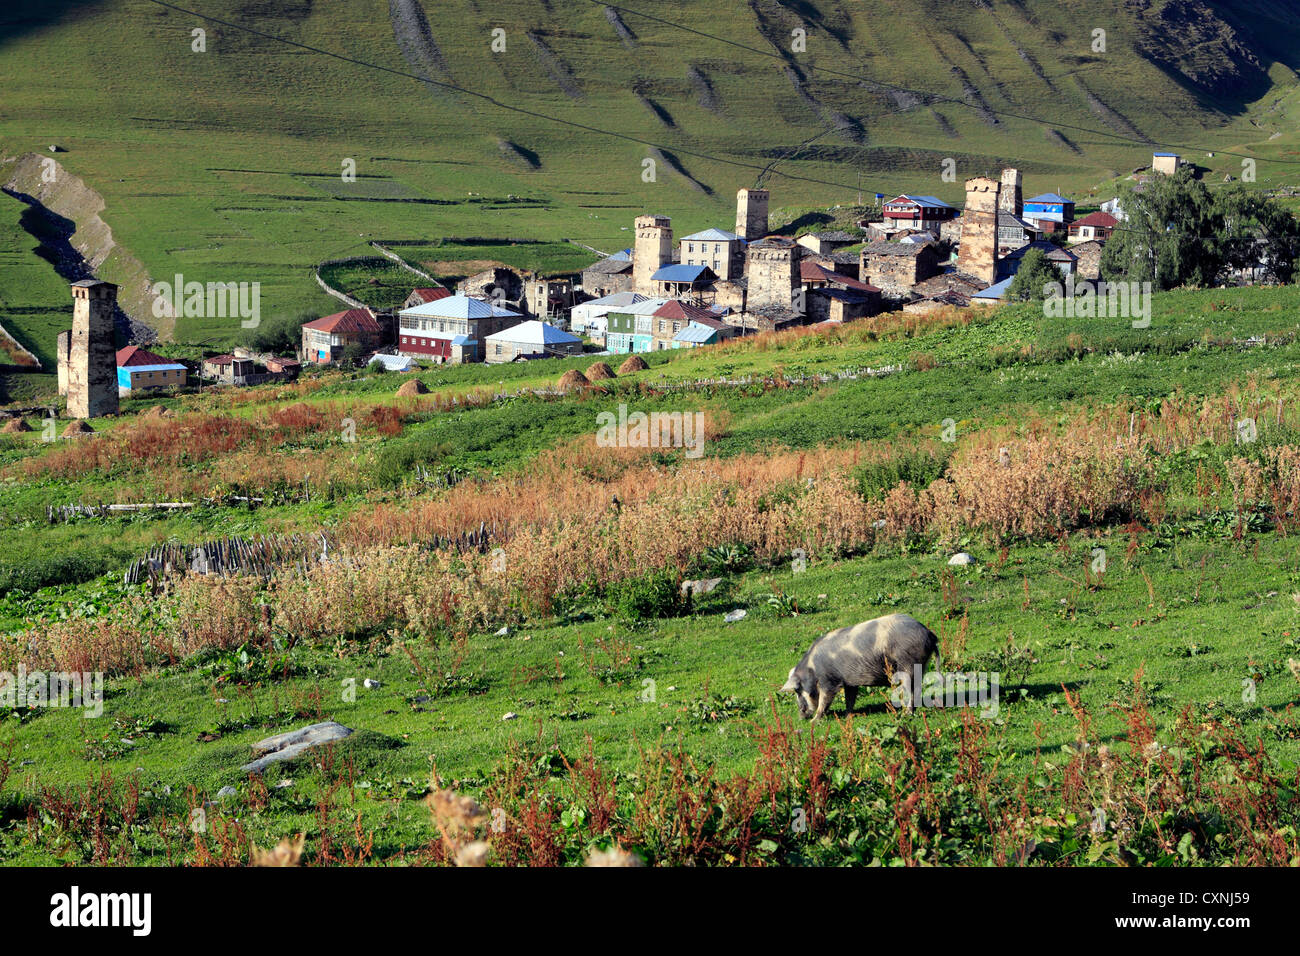 Village near Shkhara peak (5068 m), Ushghuli community, Upper Svanetia, Georgia Stock Photo